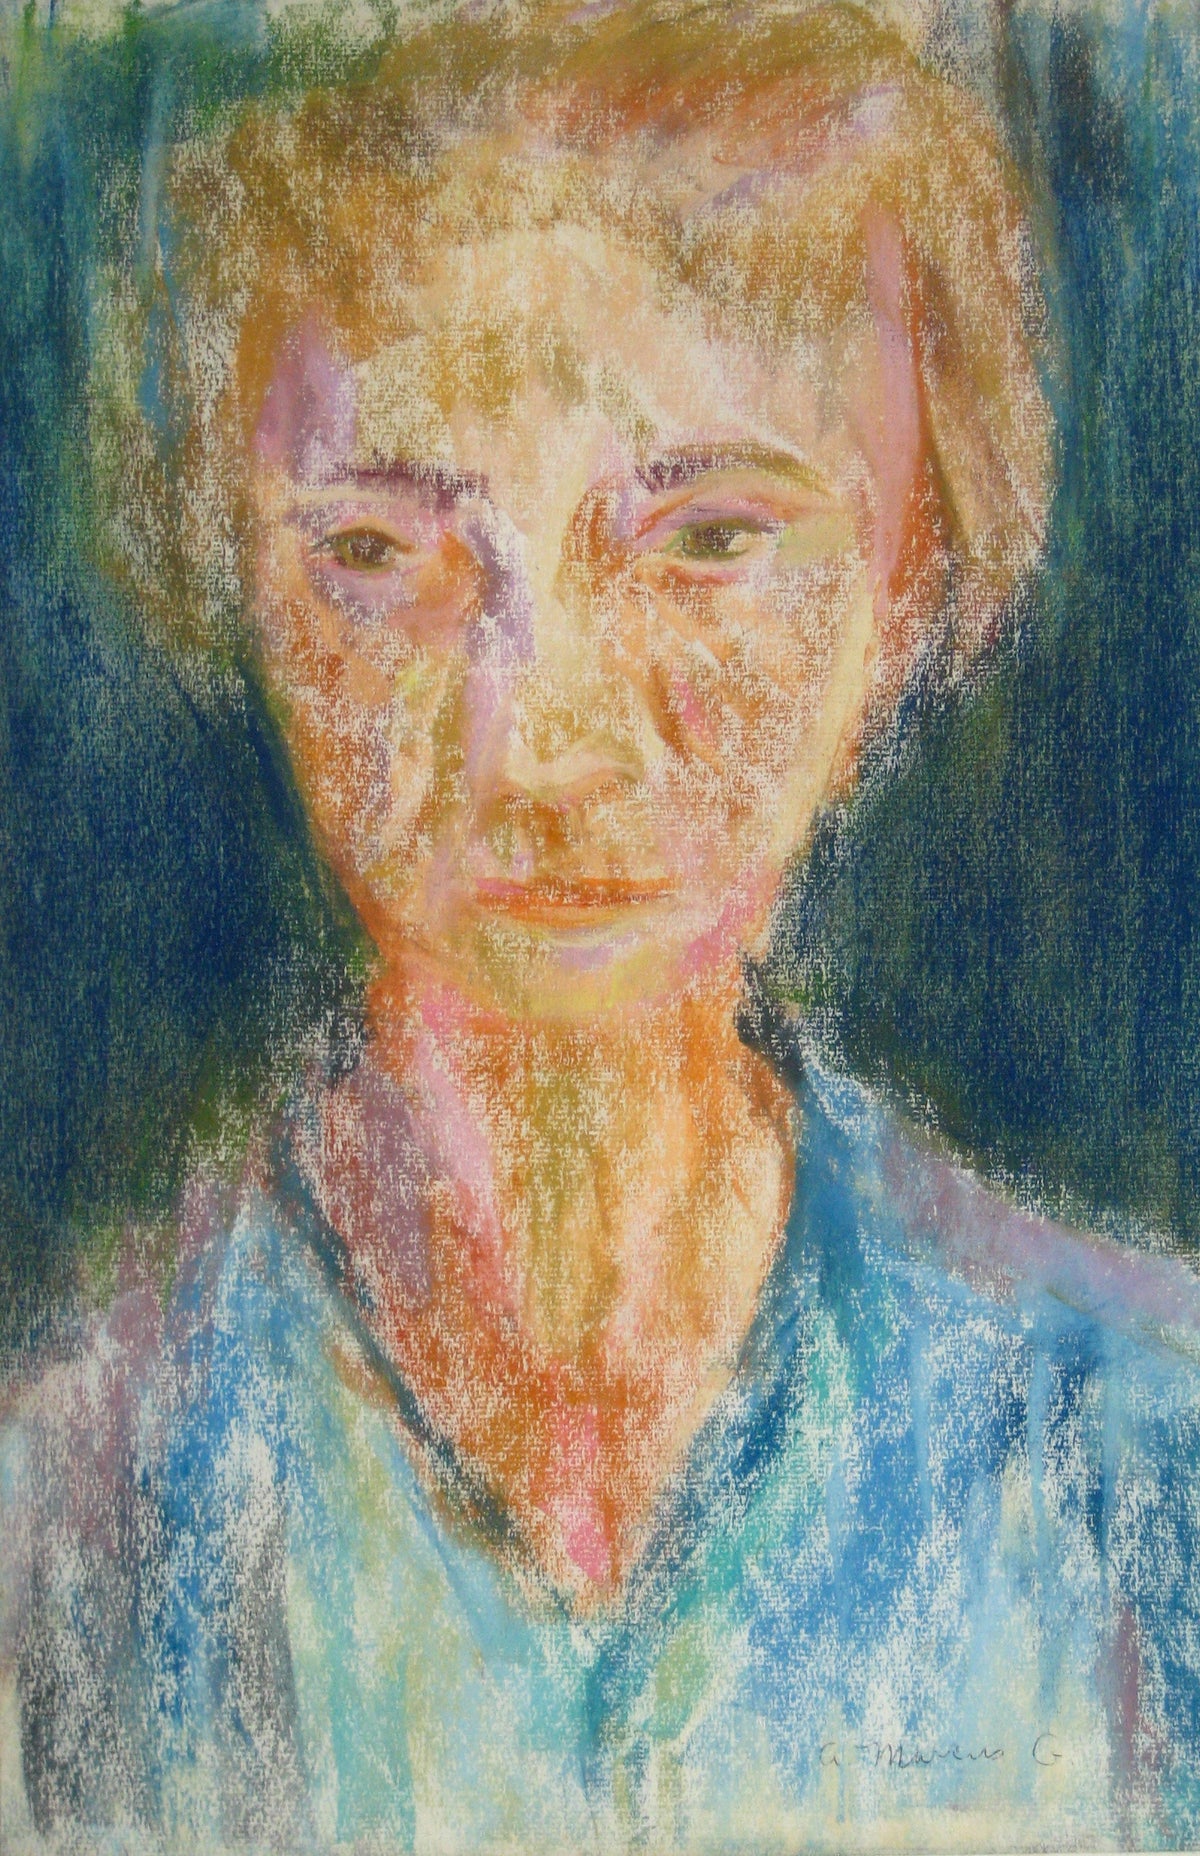 &lt;i&gt;Portrait of a Redhead&lt;/i&gt;&lt;br&gt;Pastel, 1964&lt;br&gt;&lt;br&gt;#15280